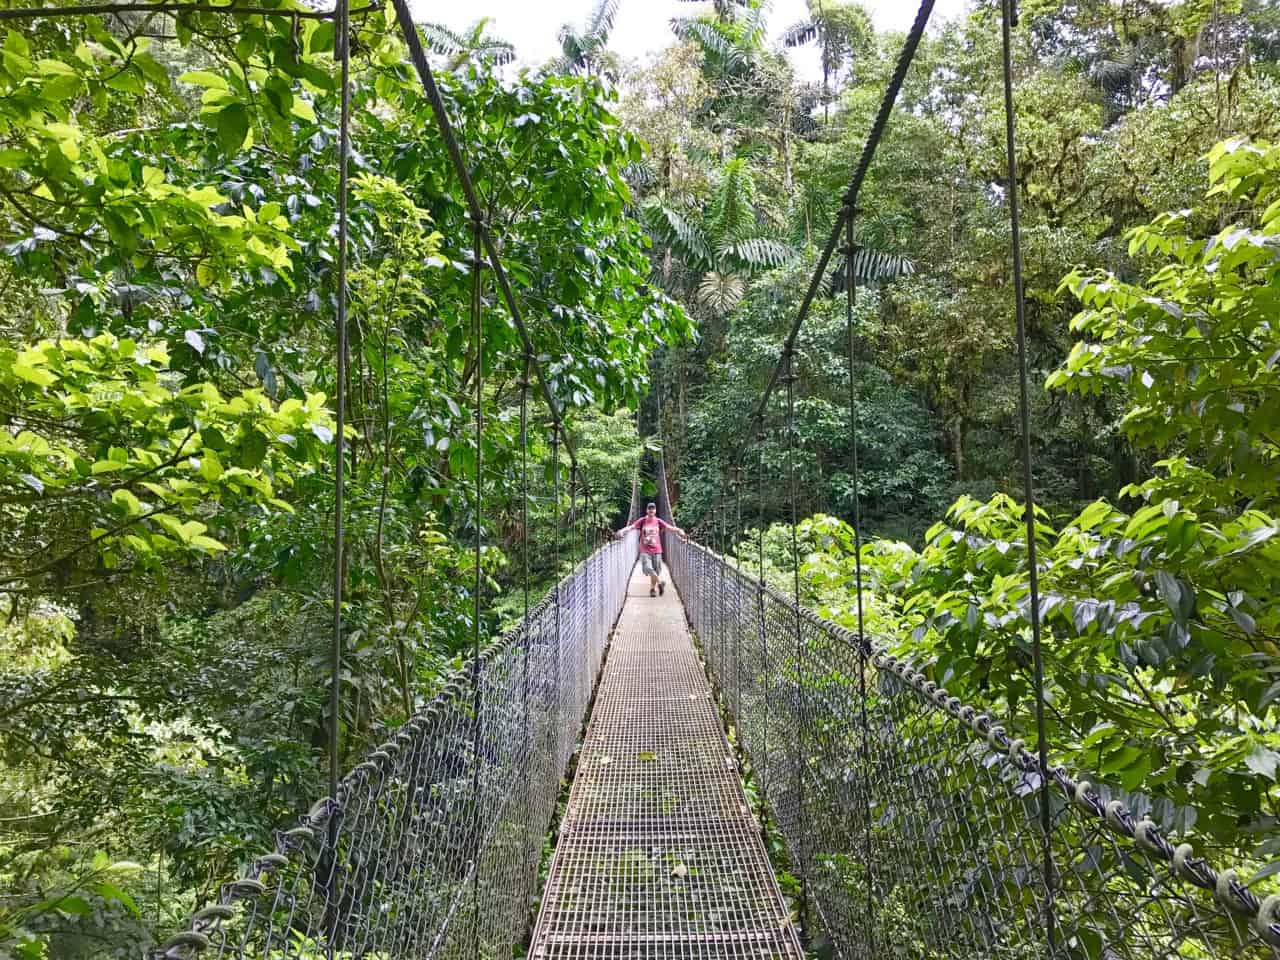  John står på en hengende bro over baldakinen På Mistico, en park I Costa Rica.